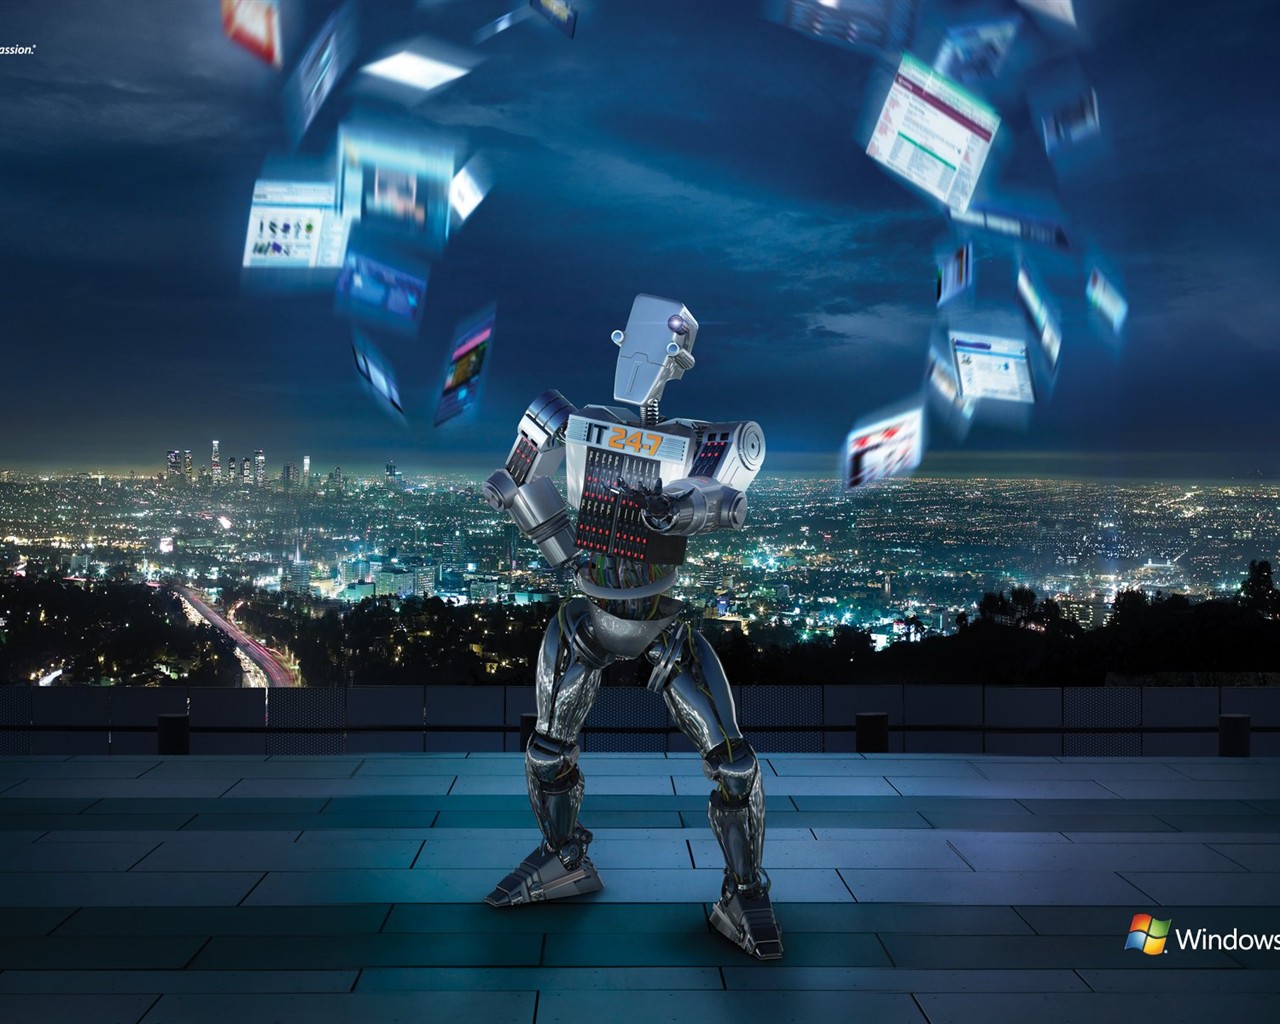 Windows IT Robot ad #1 - 1280x1024